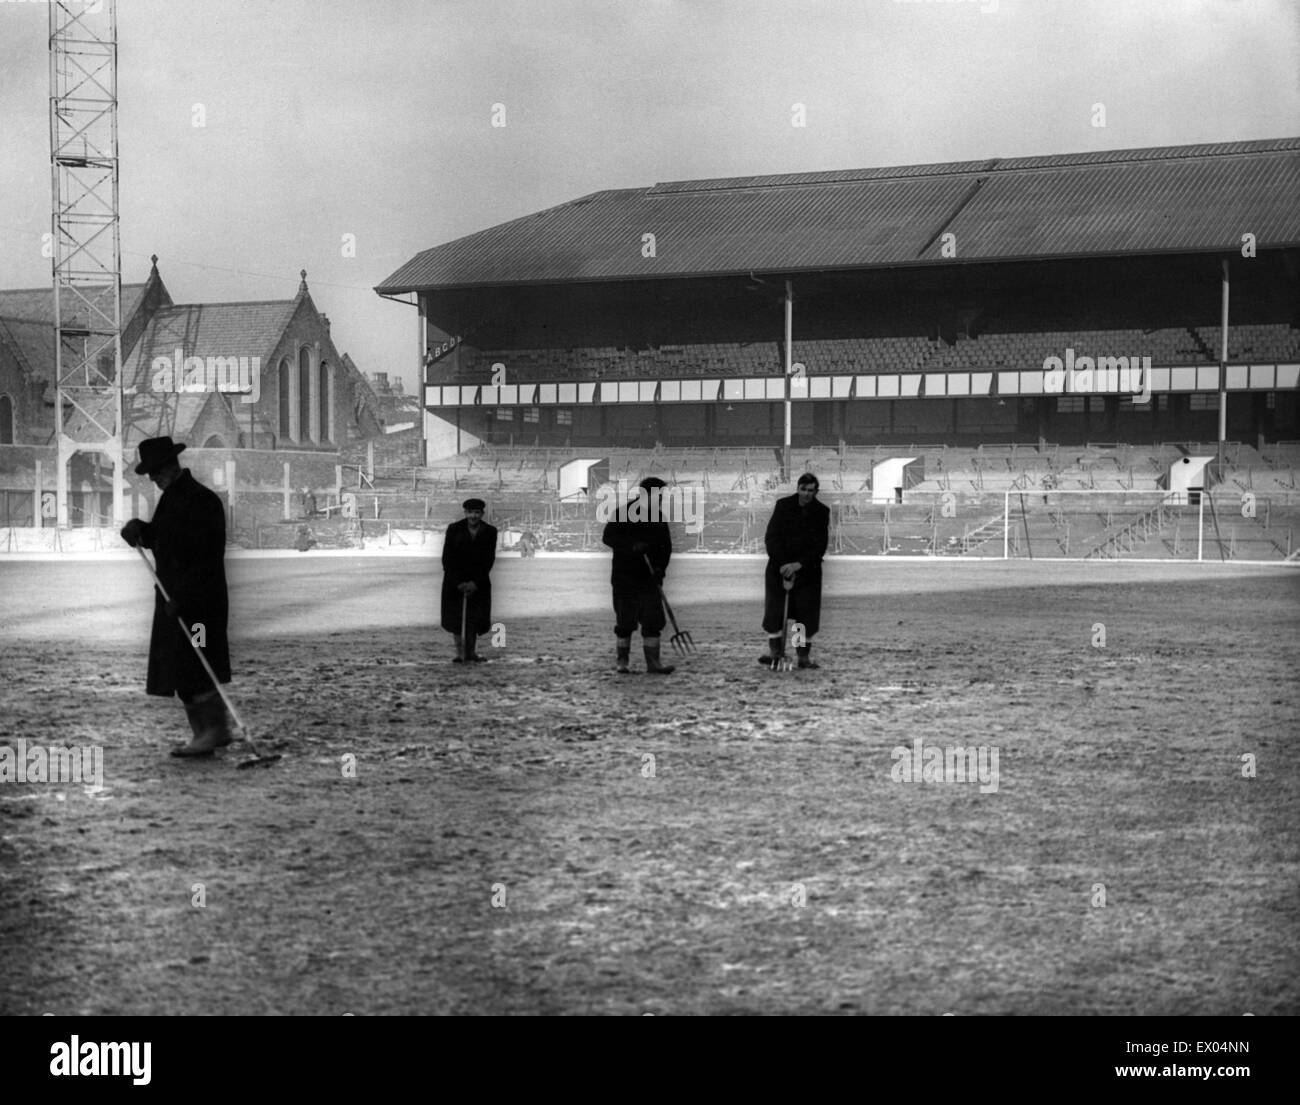 De Goodison Park, home à Everton FC, le stade de football est situé dans la région de Walton, Liverpool, Angleterre. 10 janvier 1959. La neige est effacée et pas une trace de glace est une bonne nouvelle pour les fans d'Everton pour le fa cup match v Sunderland. Sur la photo, les membres du gr Banque D'Images